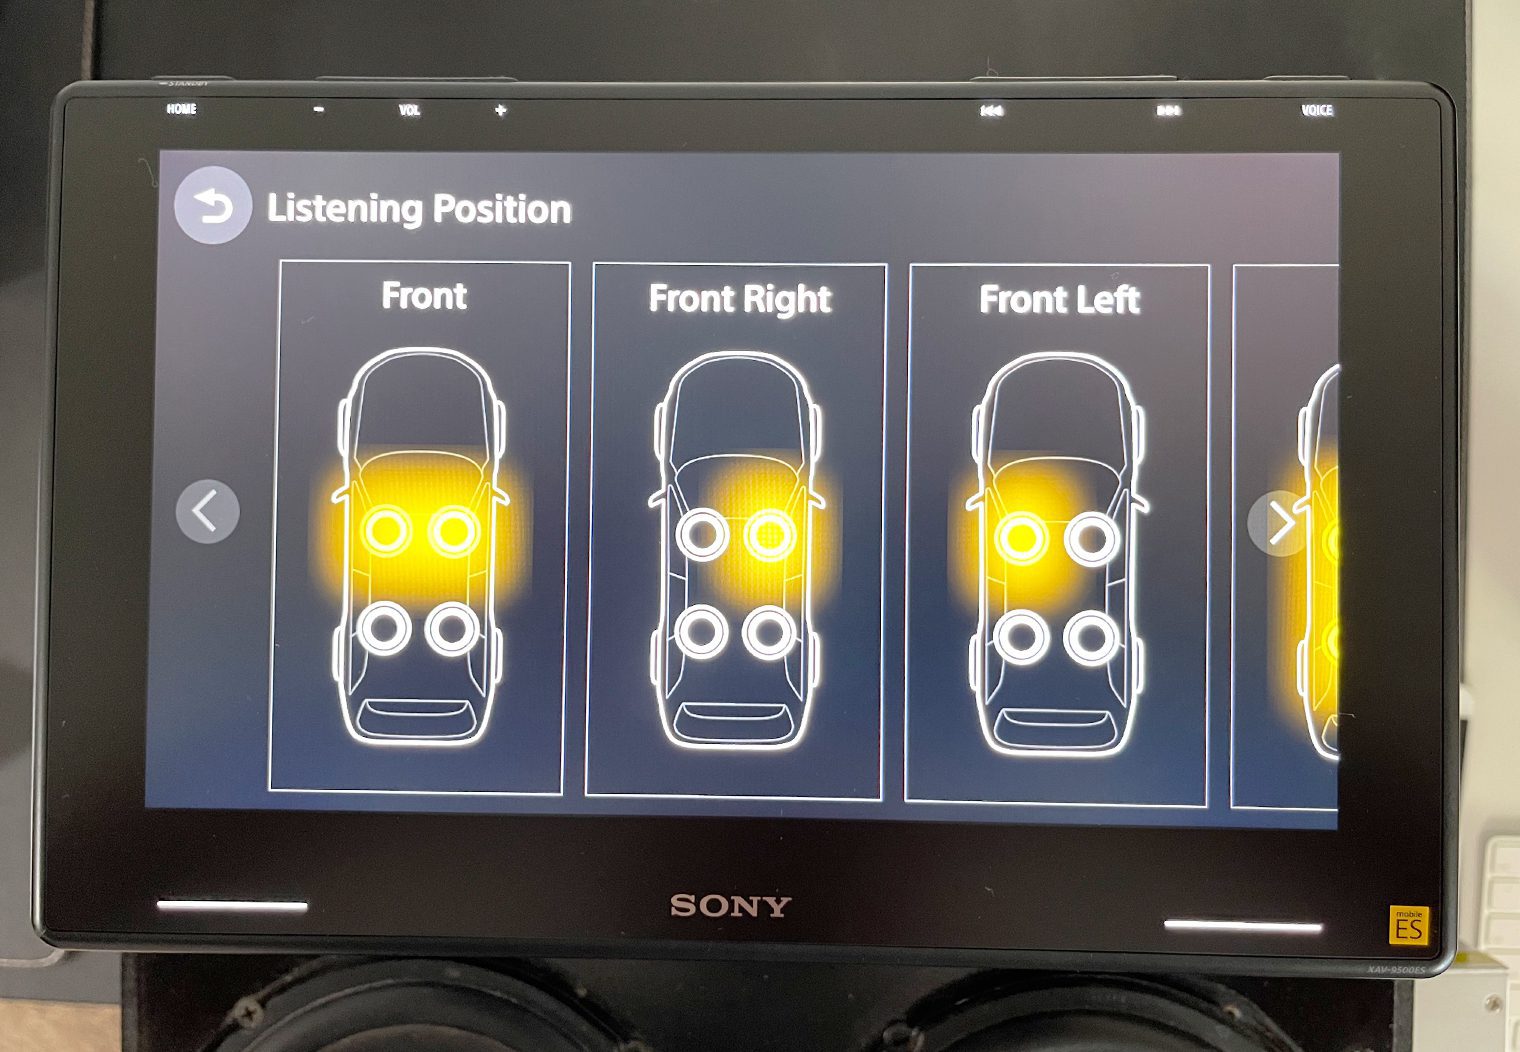 Sony XAV-9500ES listening position presets